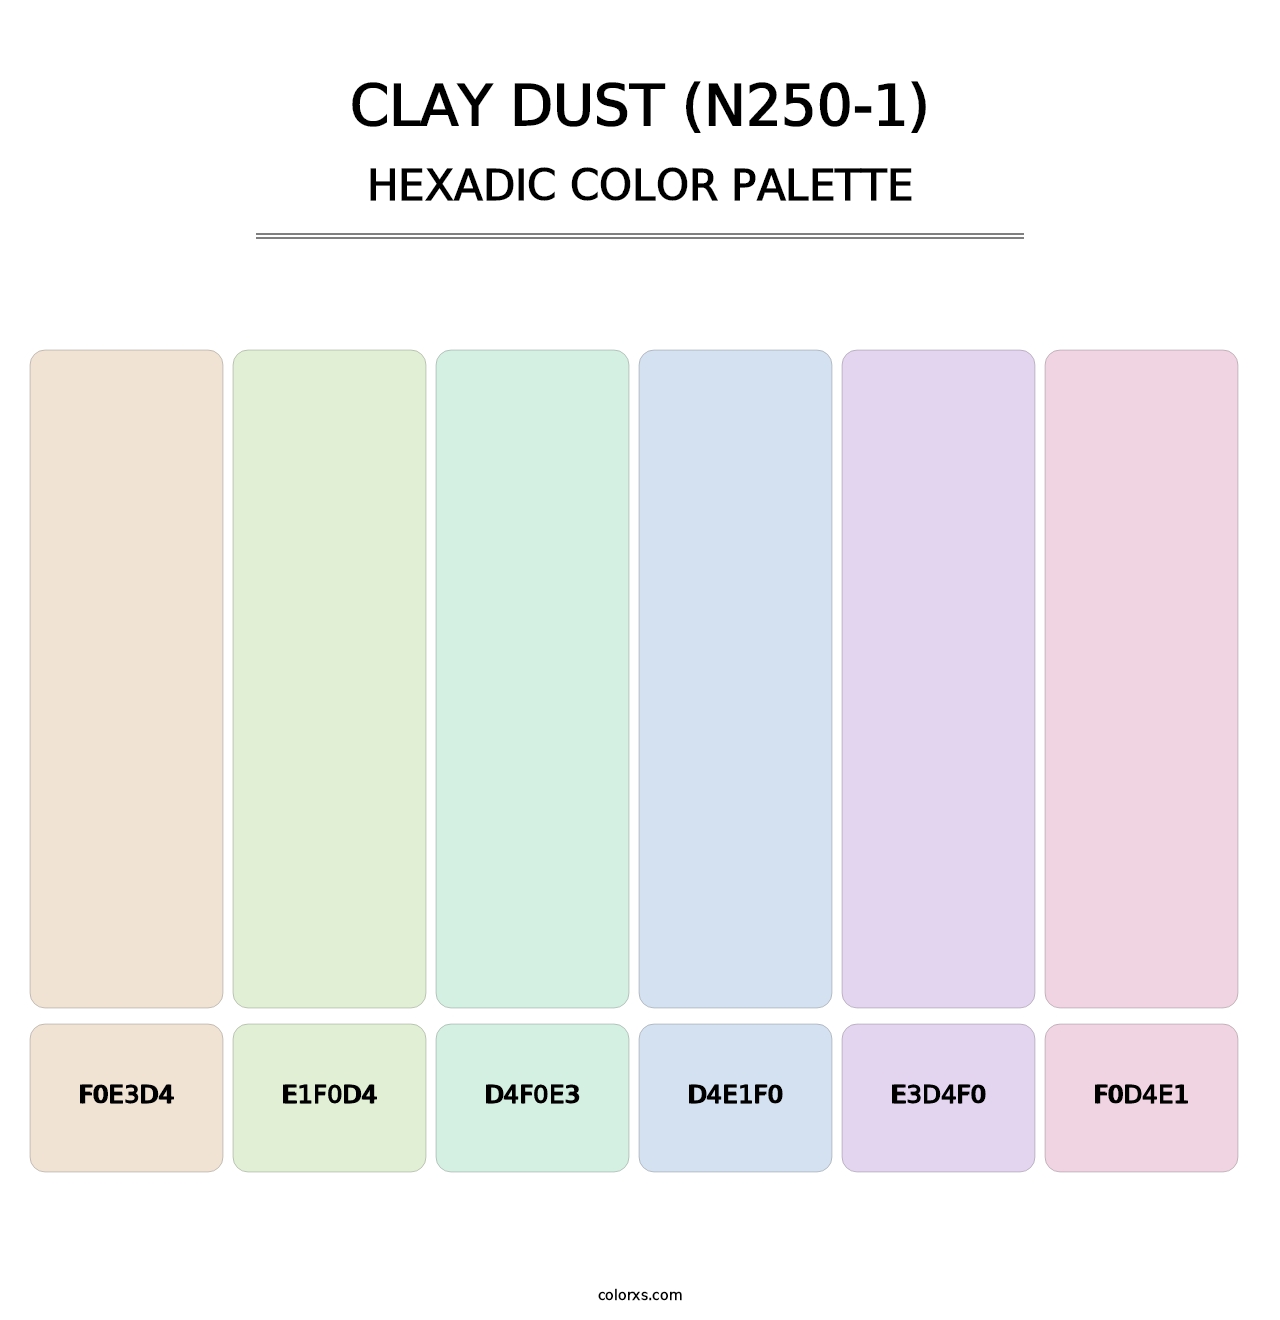 Clay Dust (N250-1) - Hexadic Color Palette